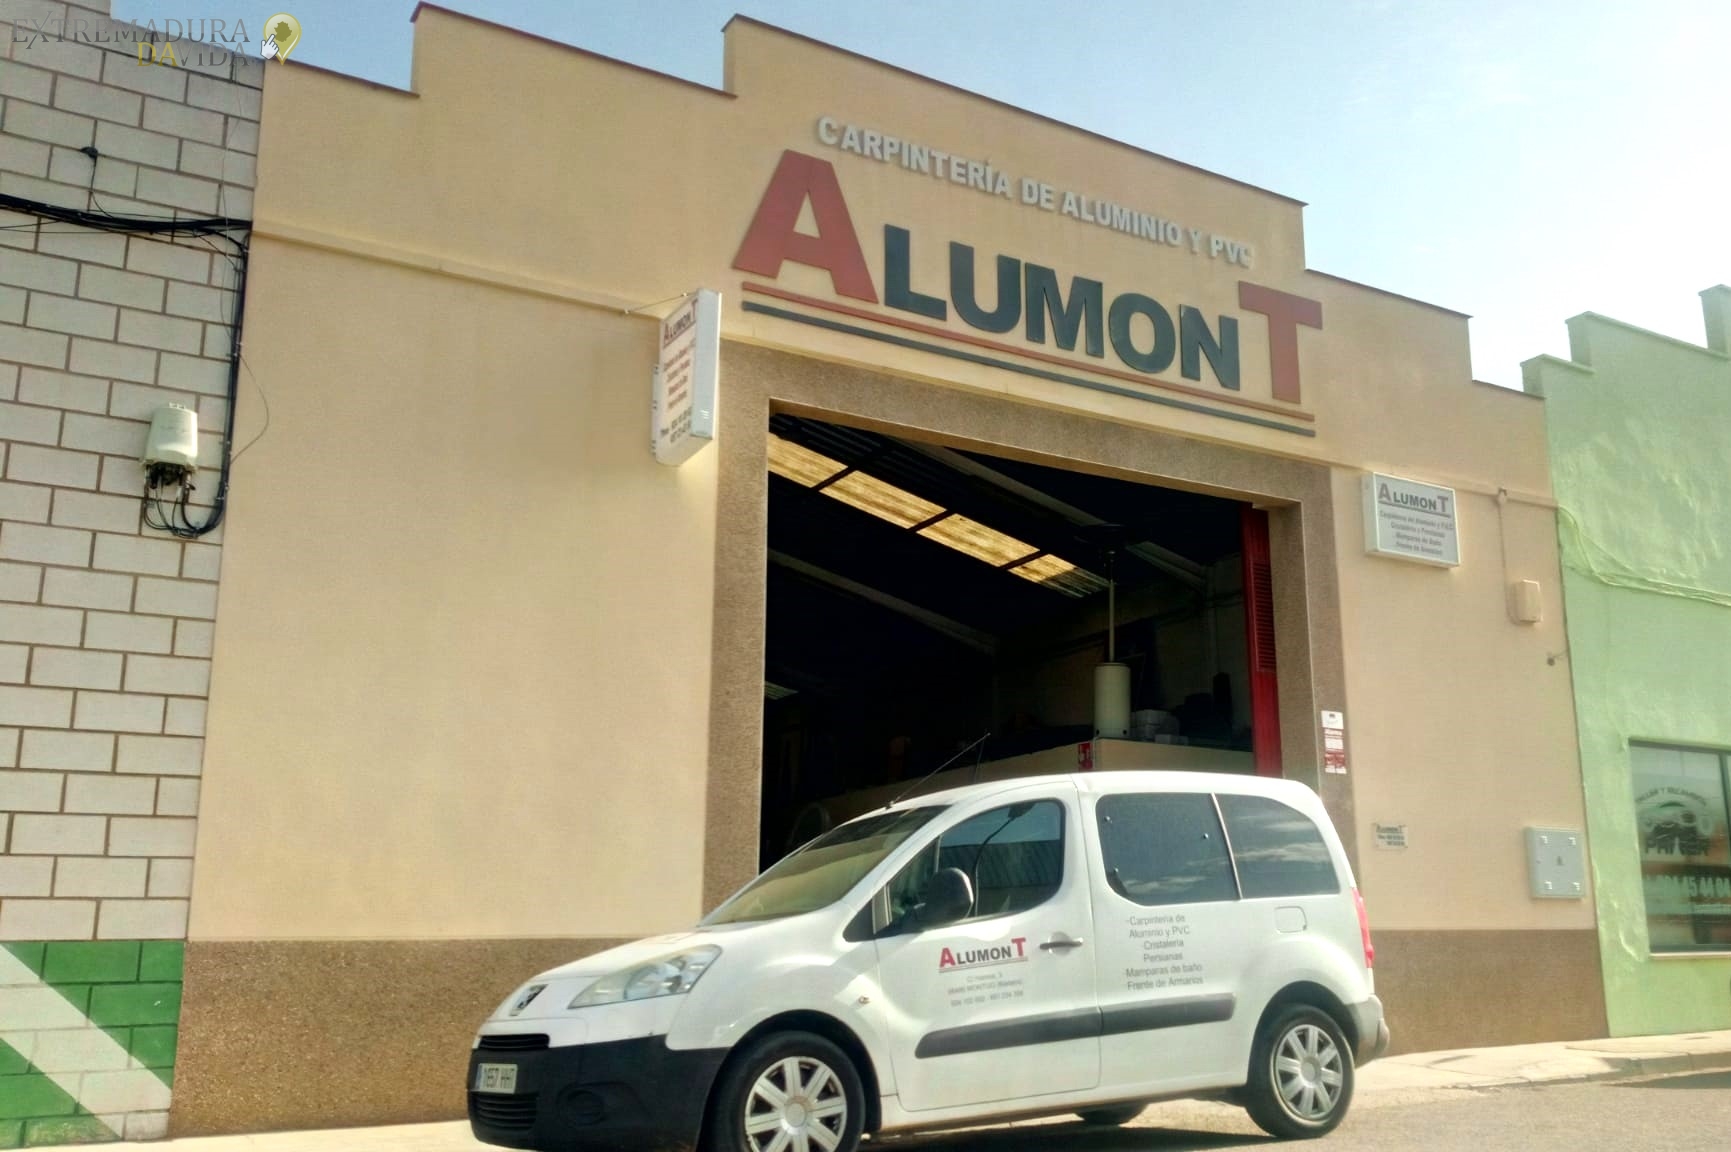 Carpintería de Aluminio MOntijo Puebla de la Calzada Alumont